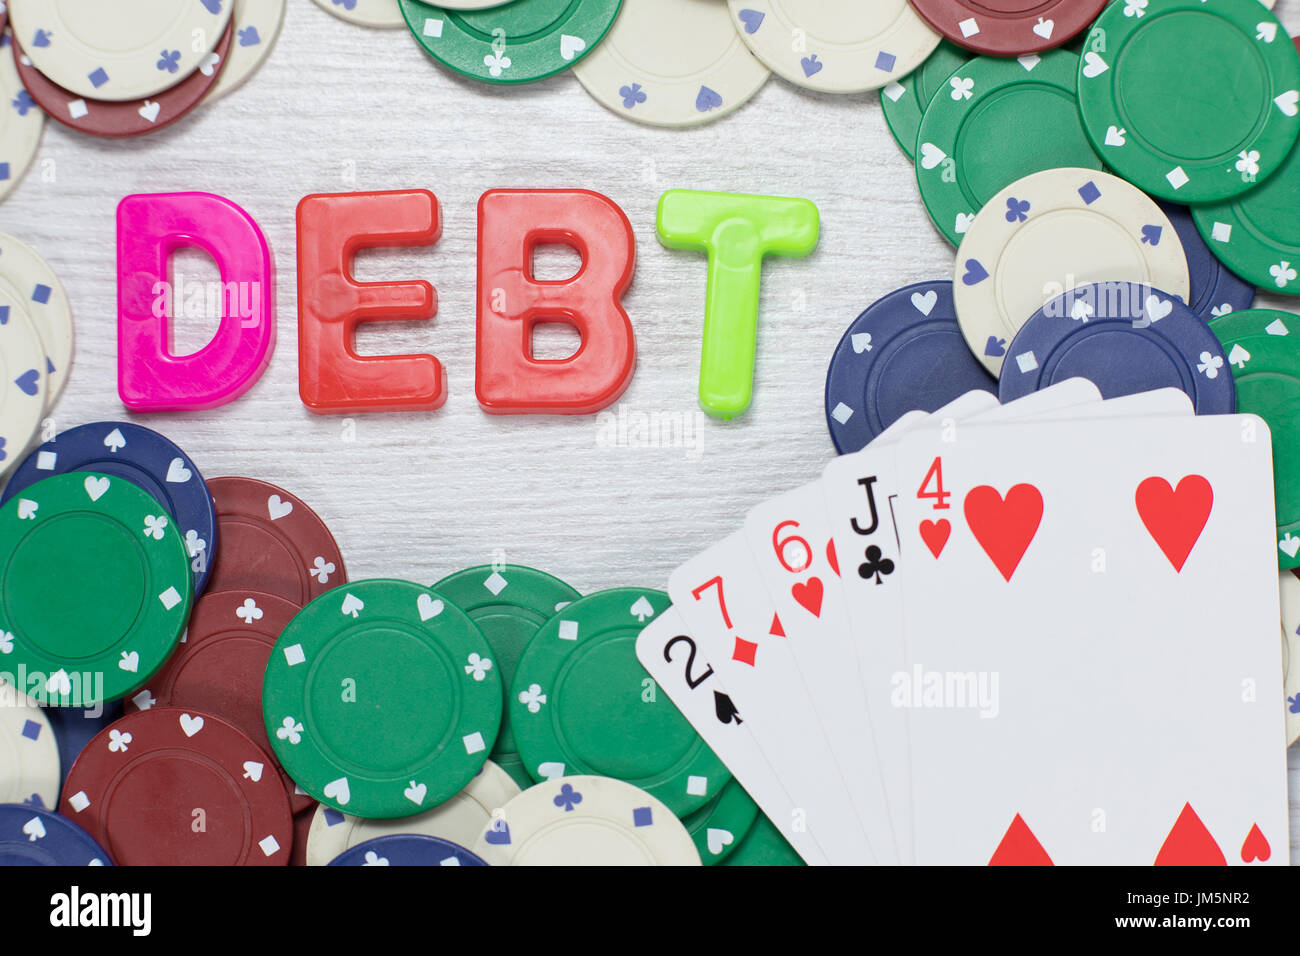 Spielschulden nach einer Pechsträhne in einem konzeptionellen Bild mit einer schlechten Hand Poker Karten aufgefächert auf Casino-Chips mit dem Wort - Schulden - col Stockfoto